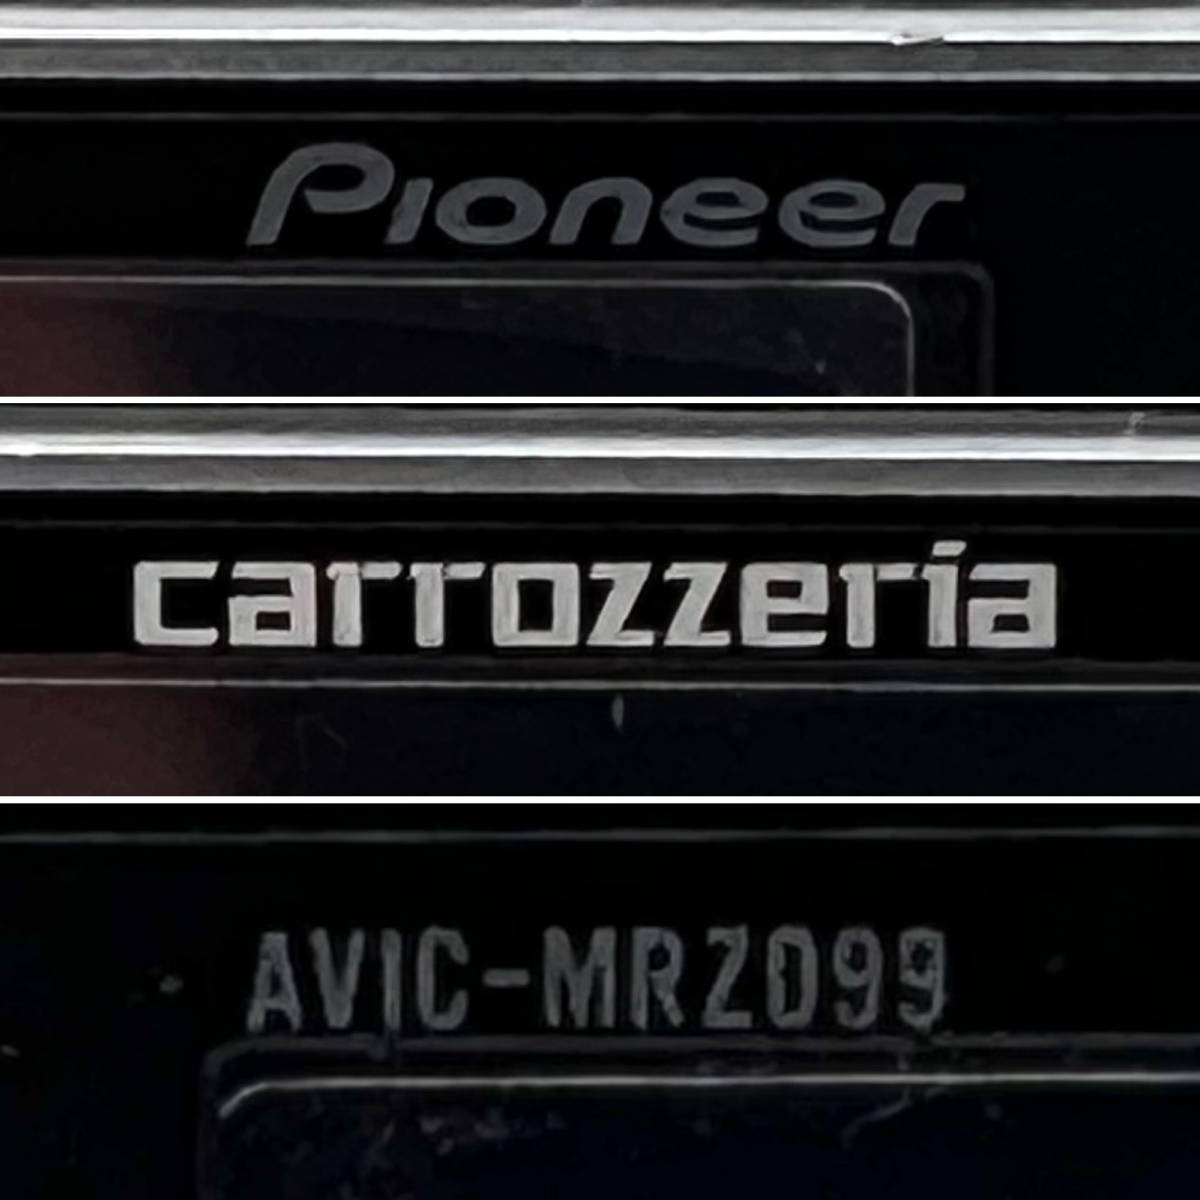 【送料込み】即決 カロッツェリア AVIC-MRZ099 社外品 ナビ フルセグ NCMD036032JP パイオニア Pioneer carrozzeria [4796]